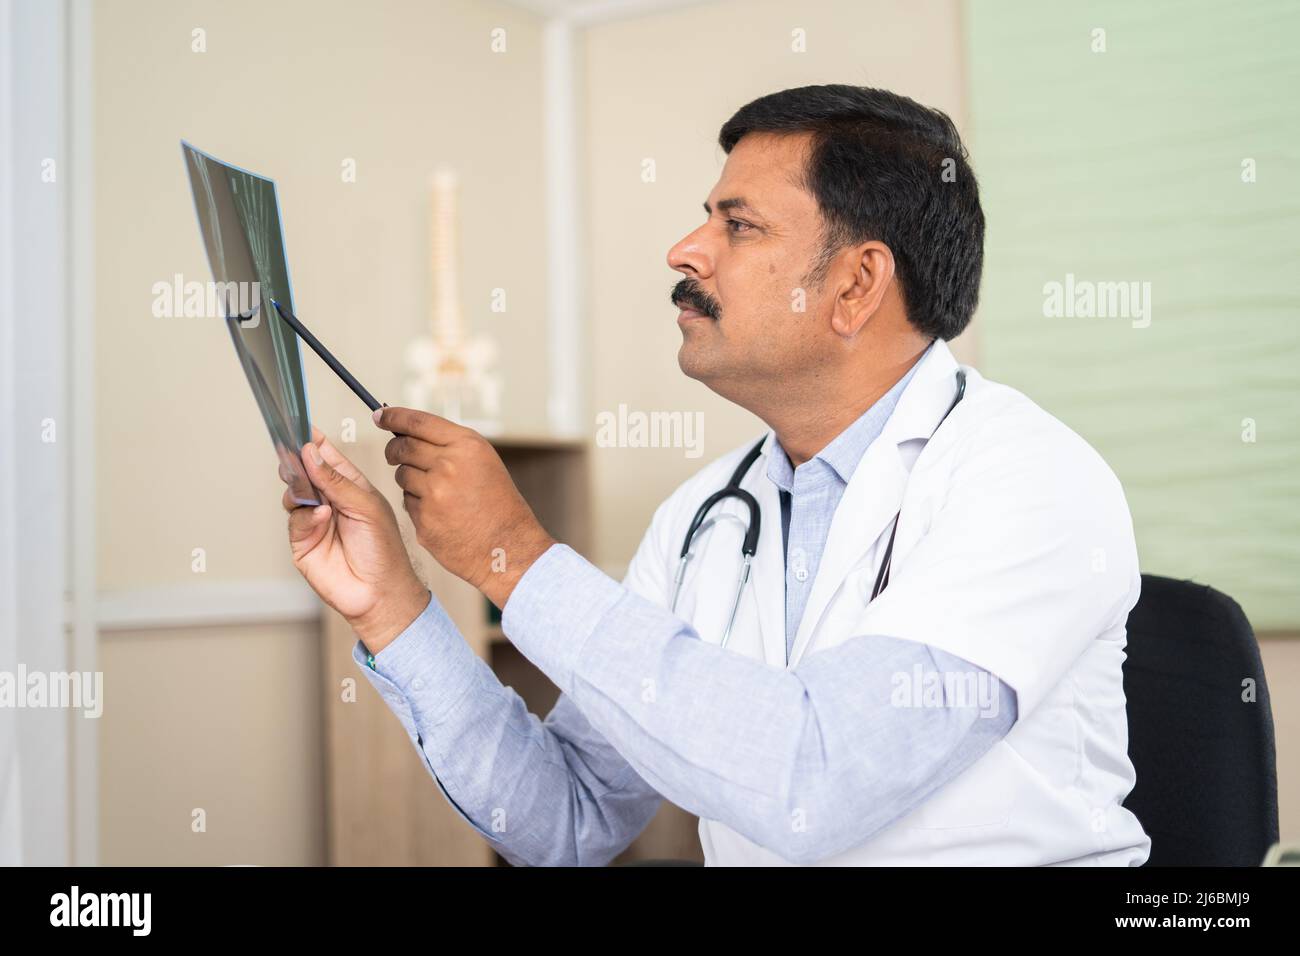 Médecin en concentration à l'hôpital analysant le rapport de rayons X - concept de soins de santé, le diagnostic et l'expertise médicale Banque D'Images